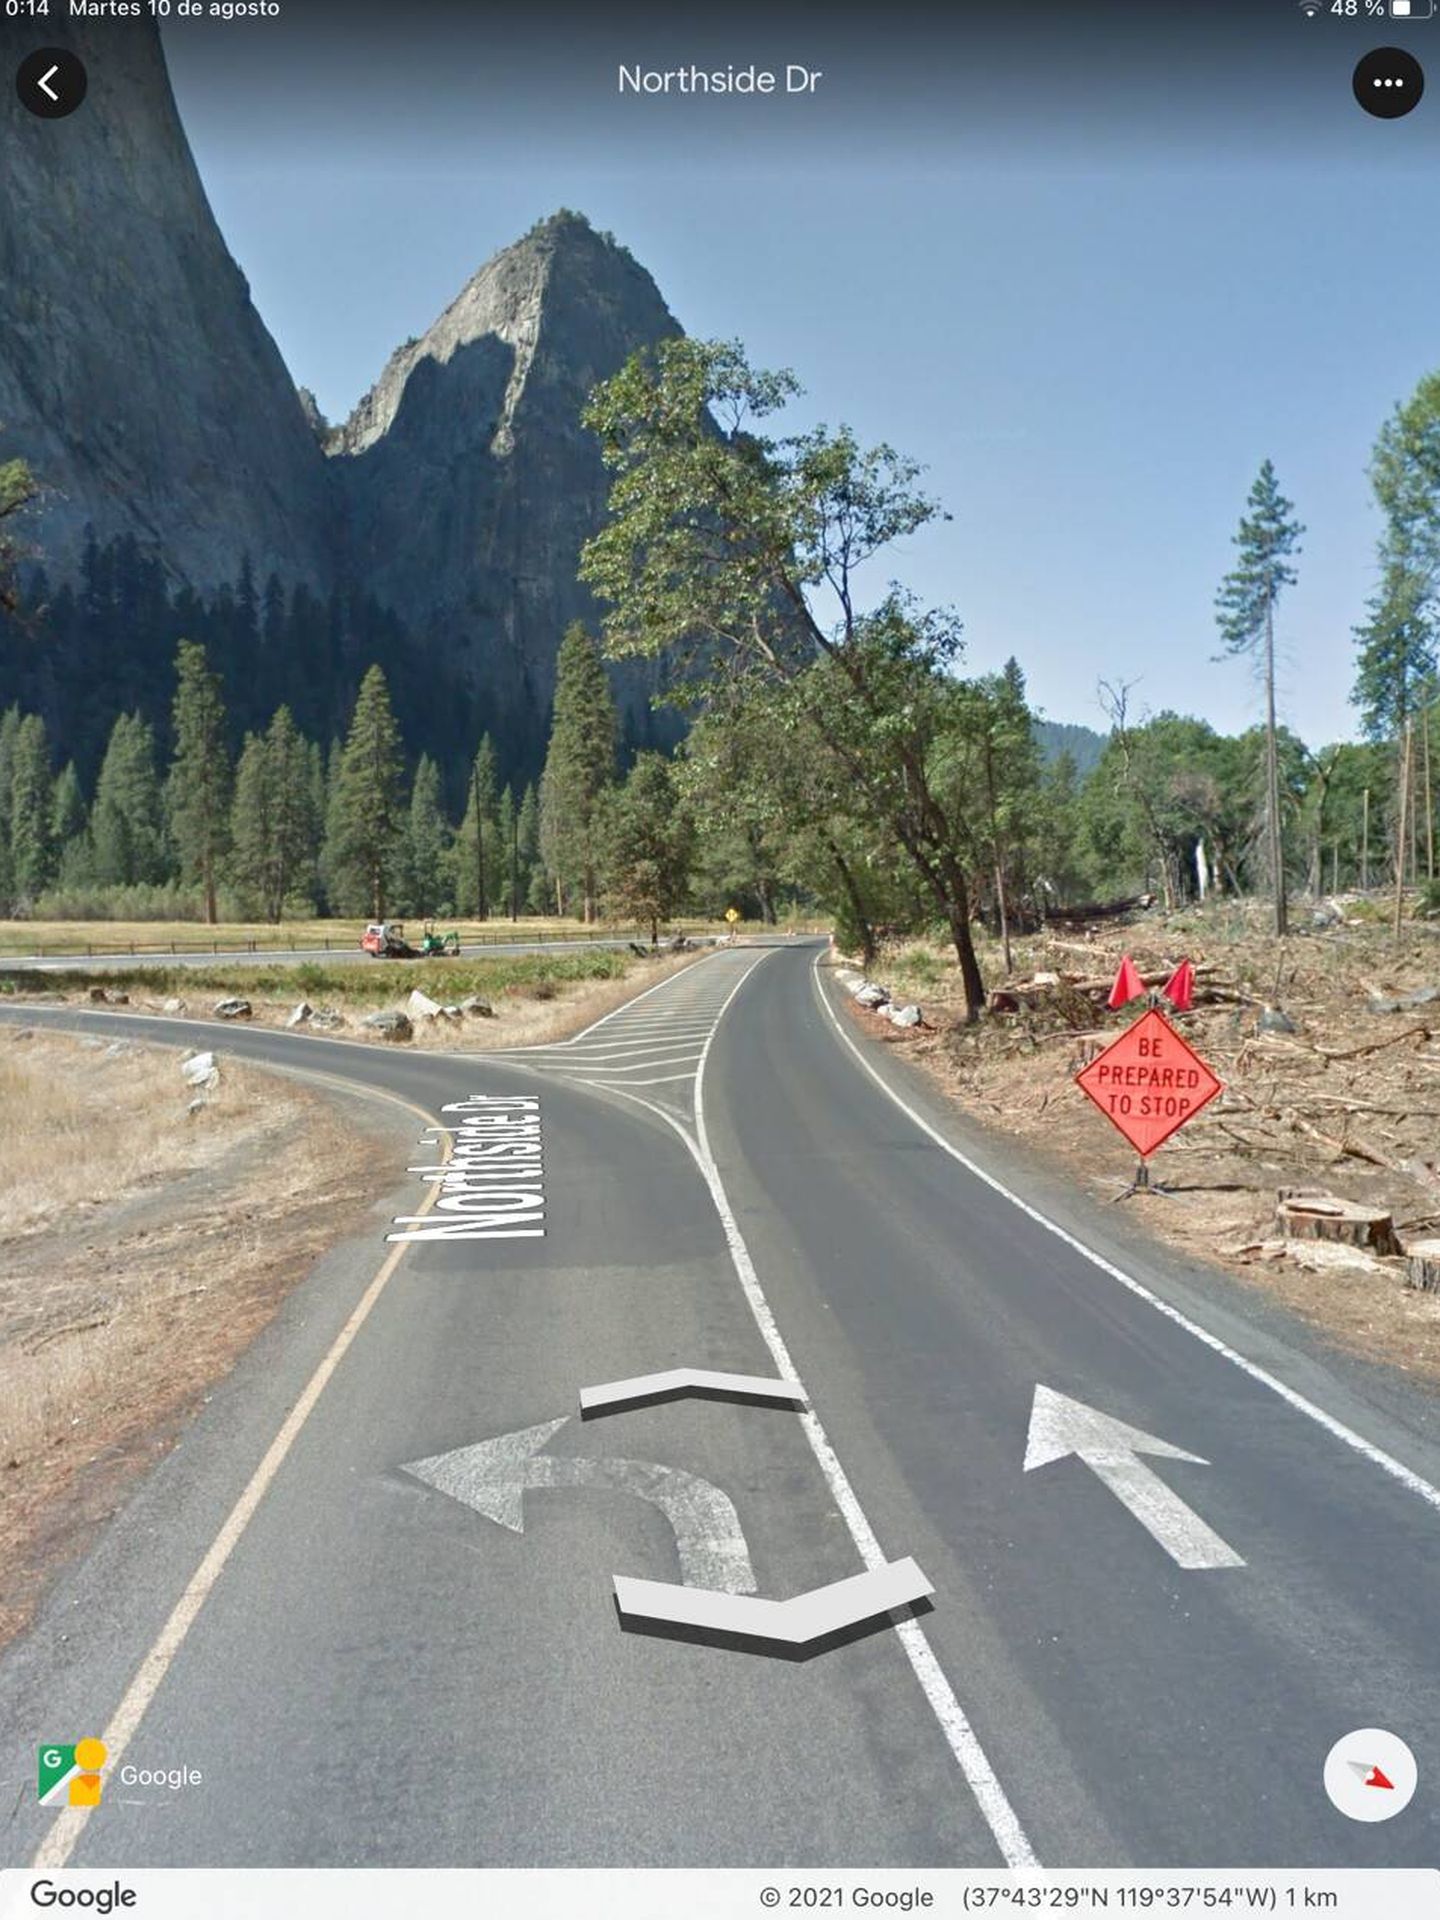 La bifurcación no entraña aparentemente riesgo alguno, y puntos como el de Yosemite son habituales. De ahí el misterio en torno al caso.